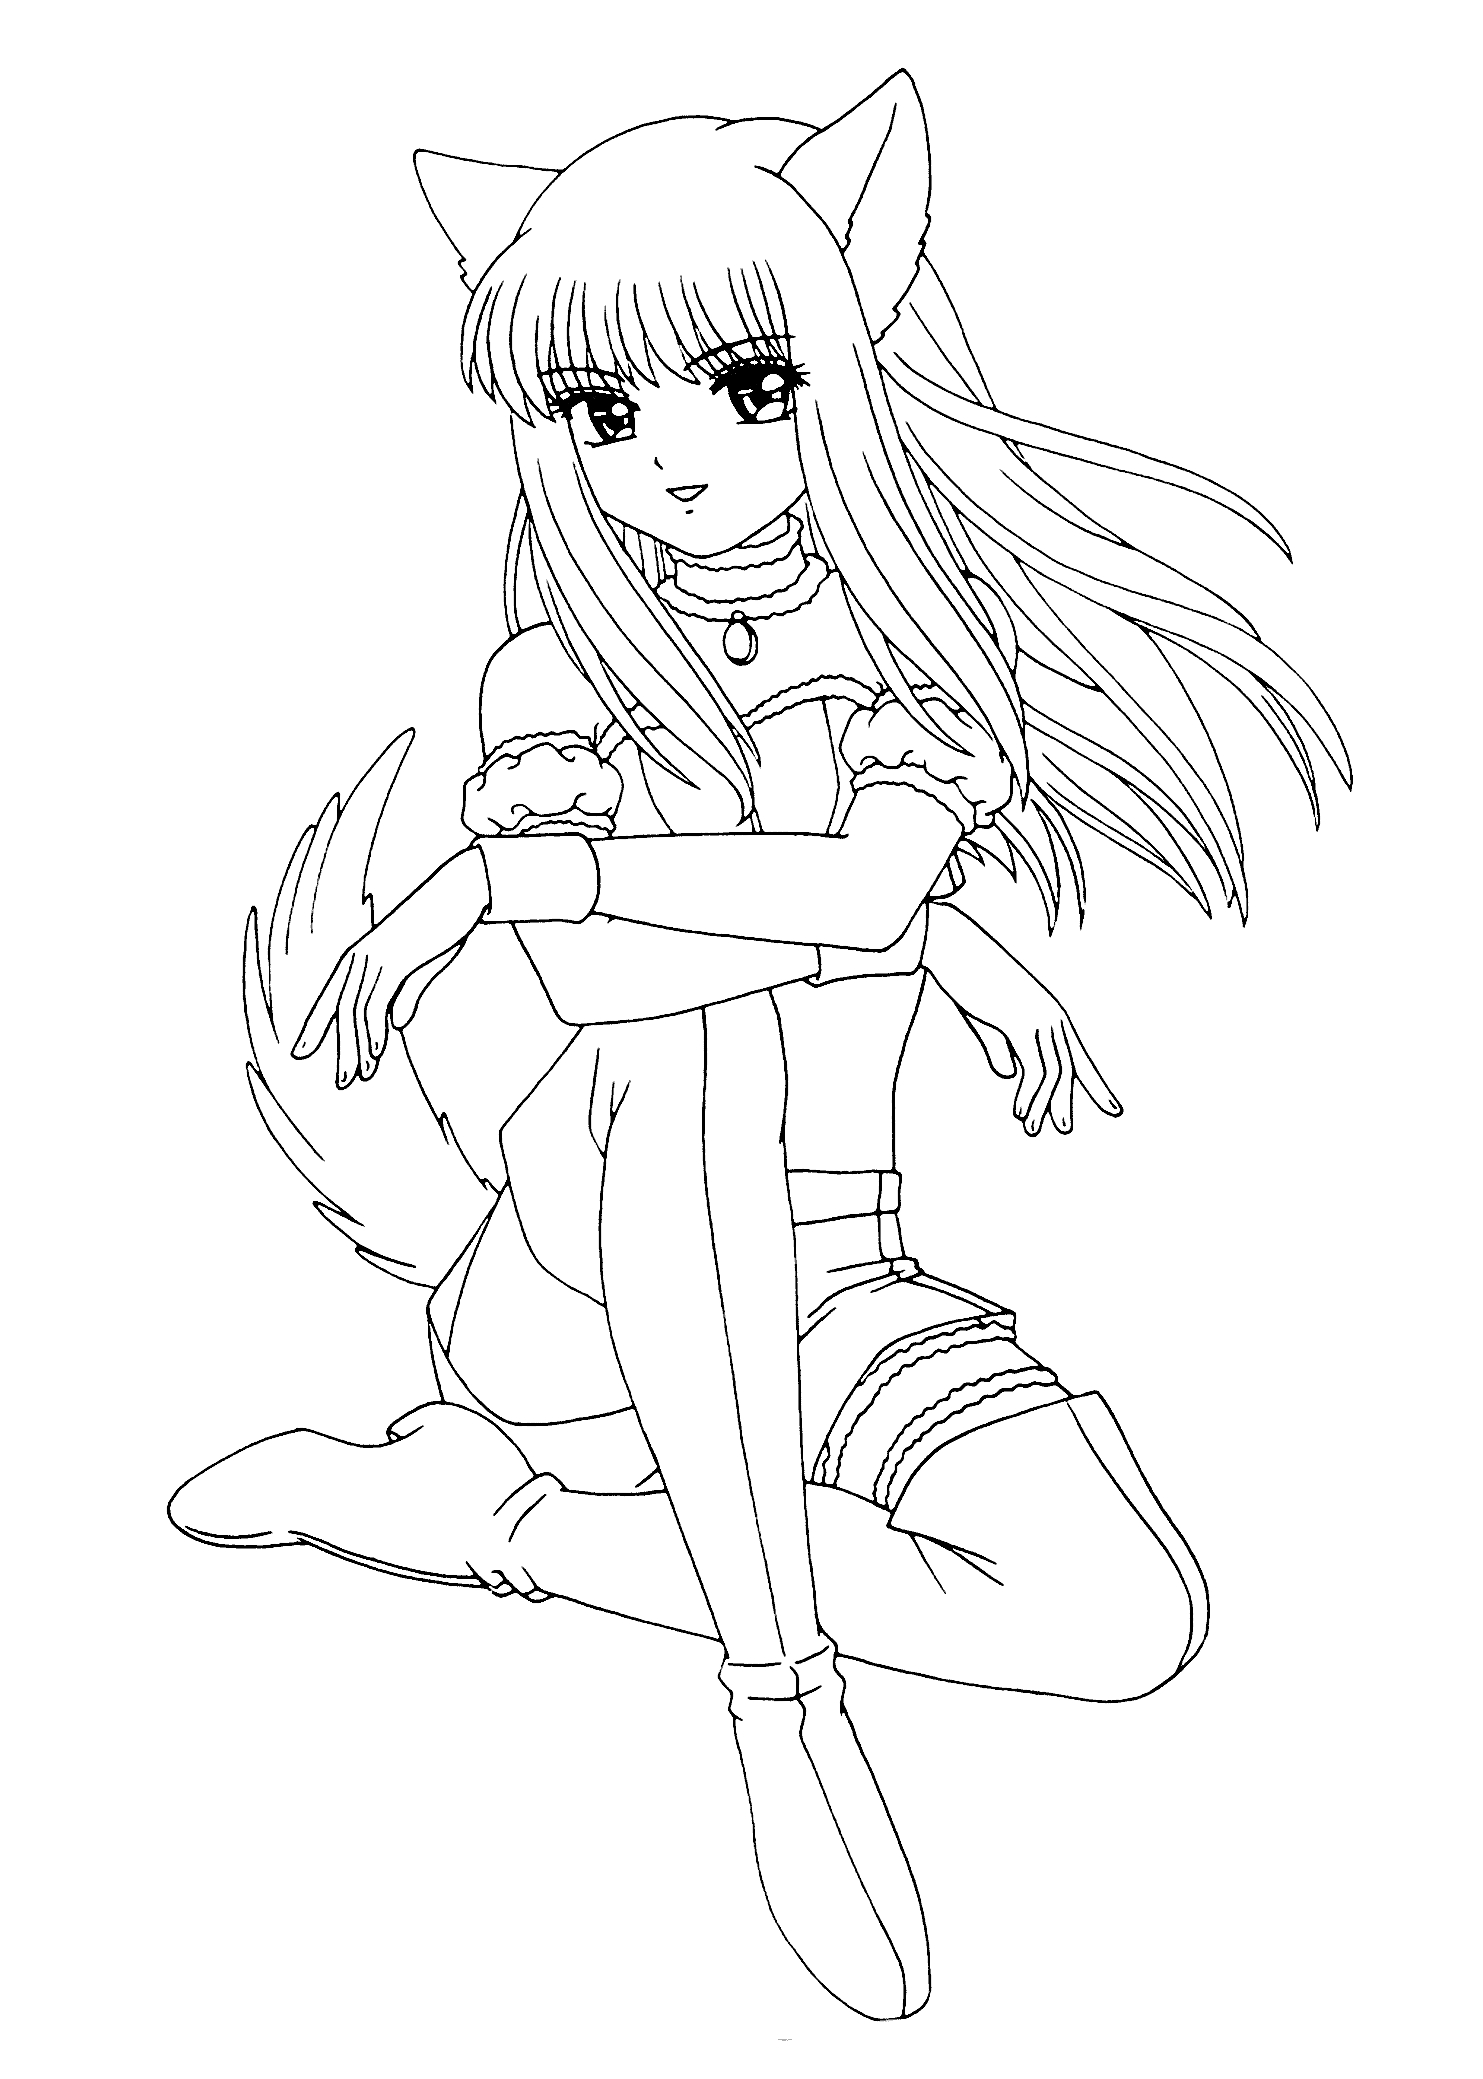 Девушка аниме с кошачьими ушами и хвостом, сидящая с расслабленными руками, длинные волосы, нога на ногу